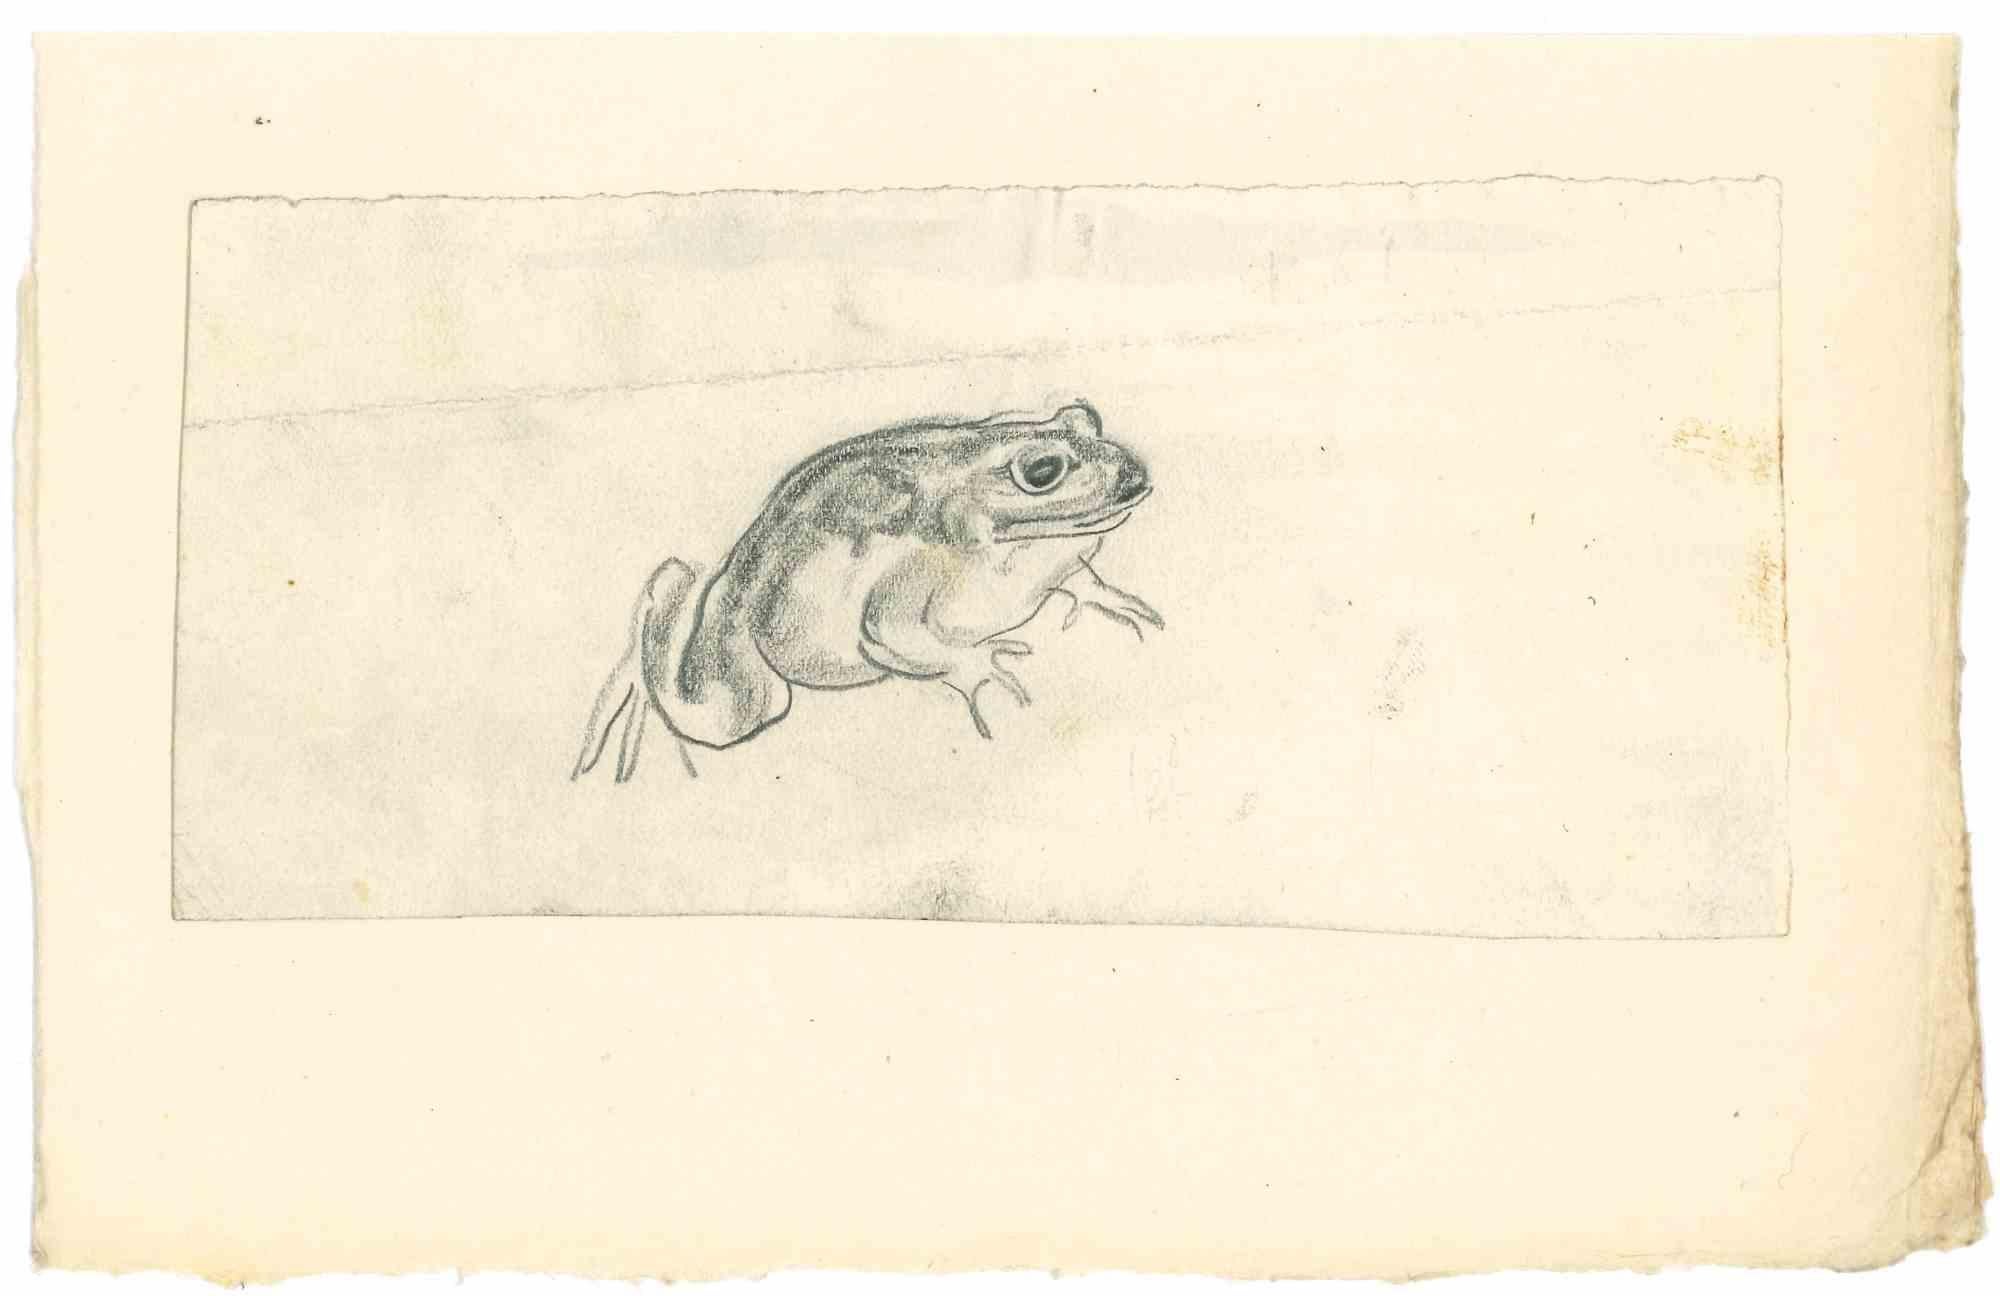 Frog - Drawing in pencil by Emmanuel Gondouin - 1930s